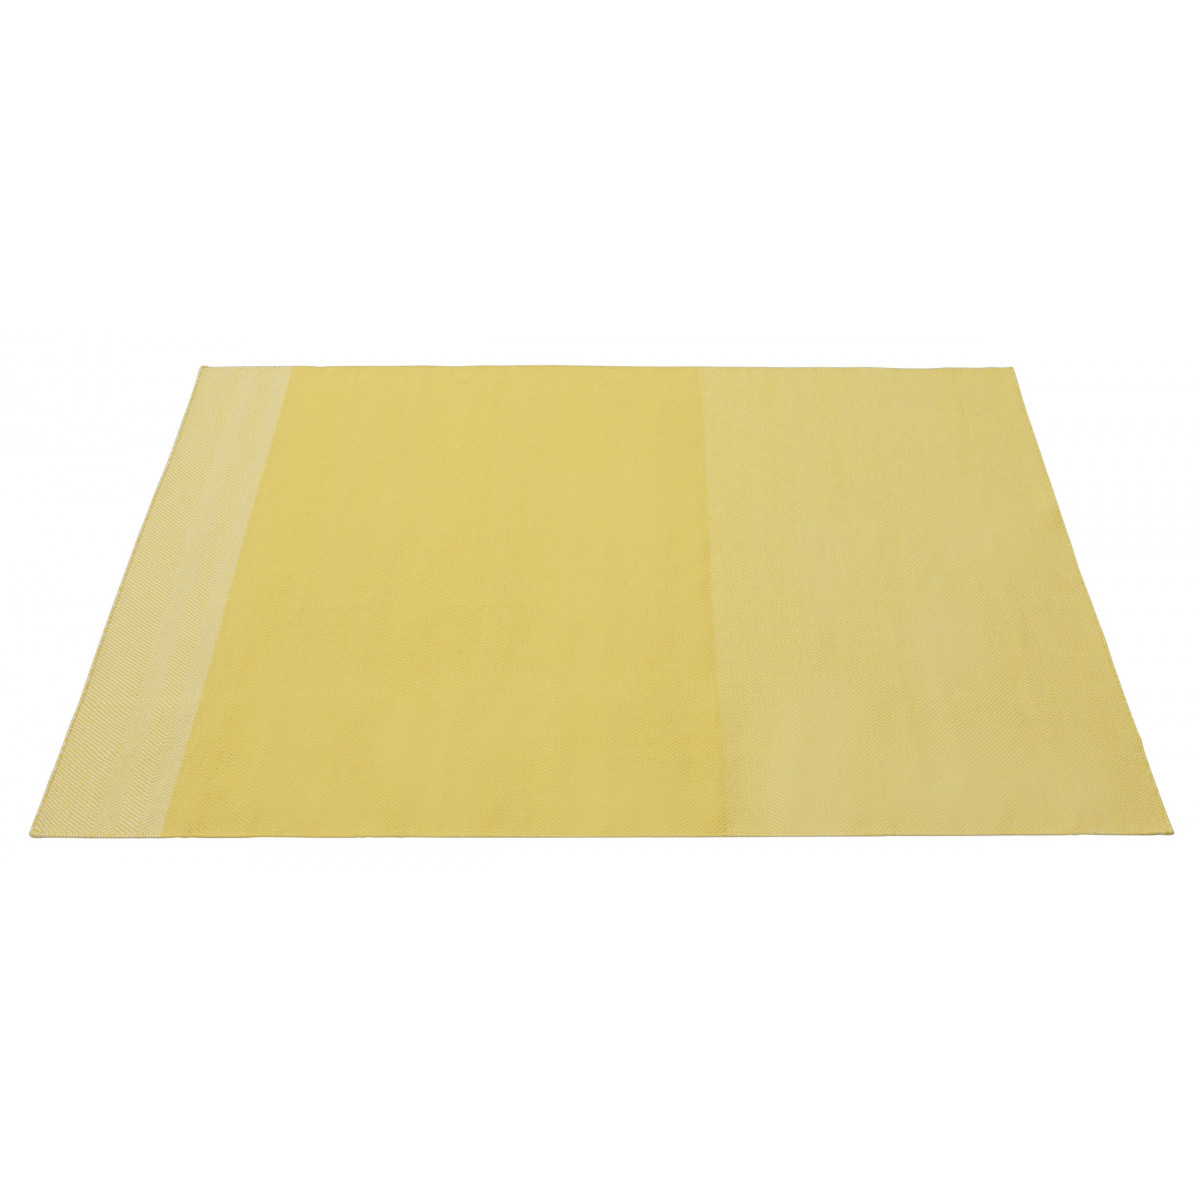 170x240cm - yellow - Varjo rug